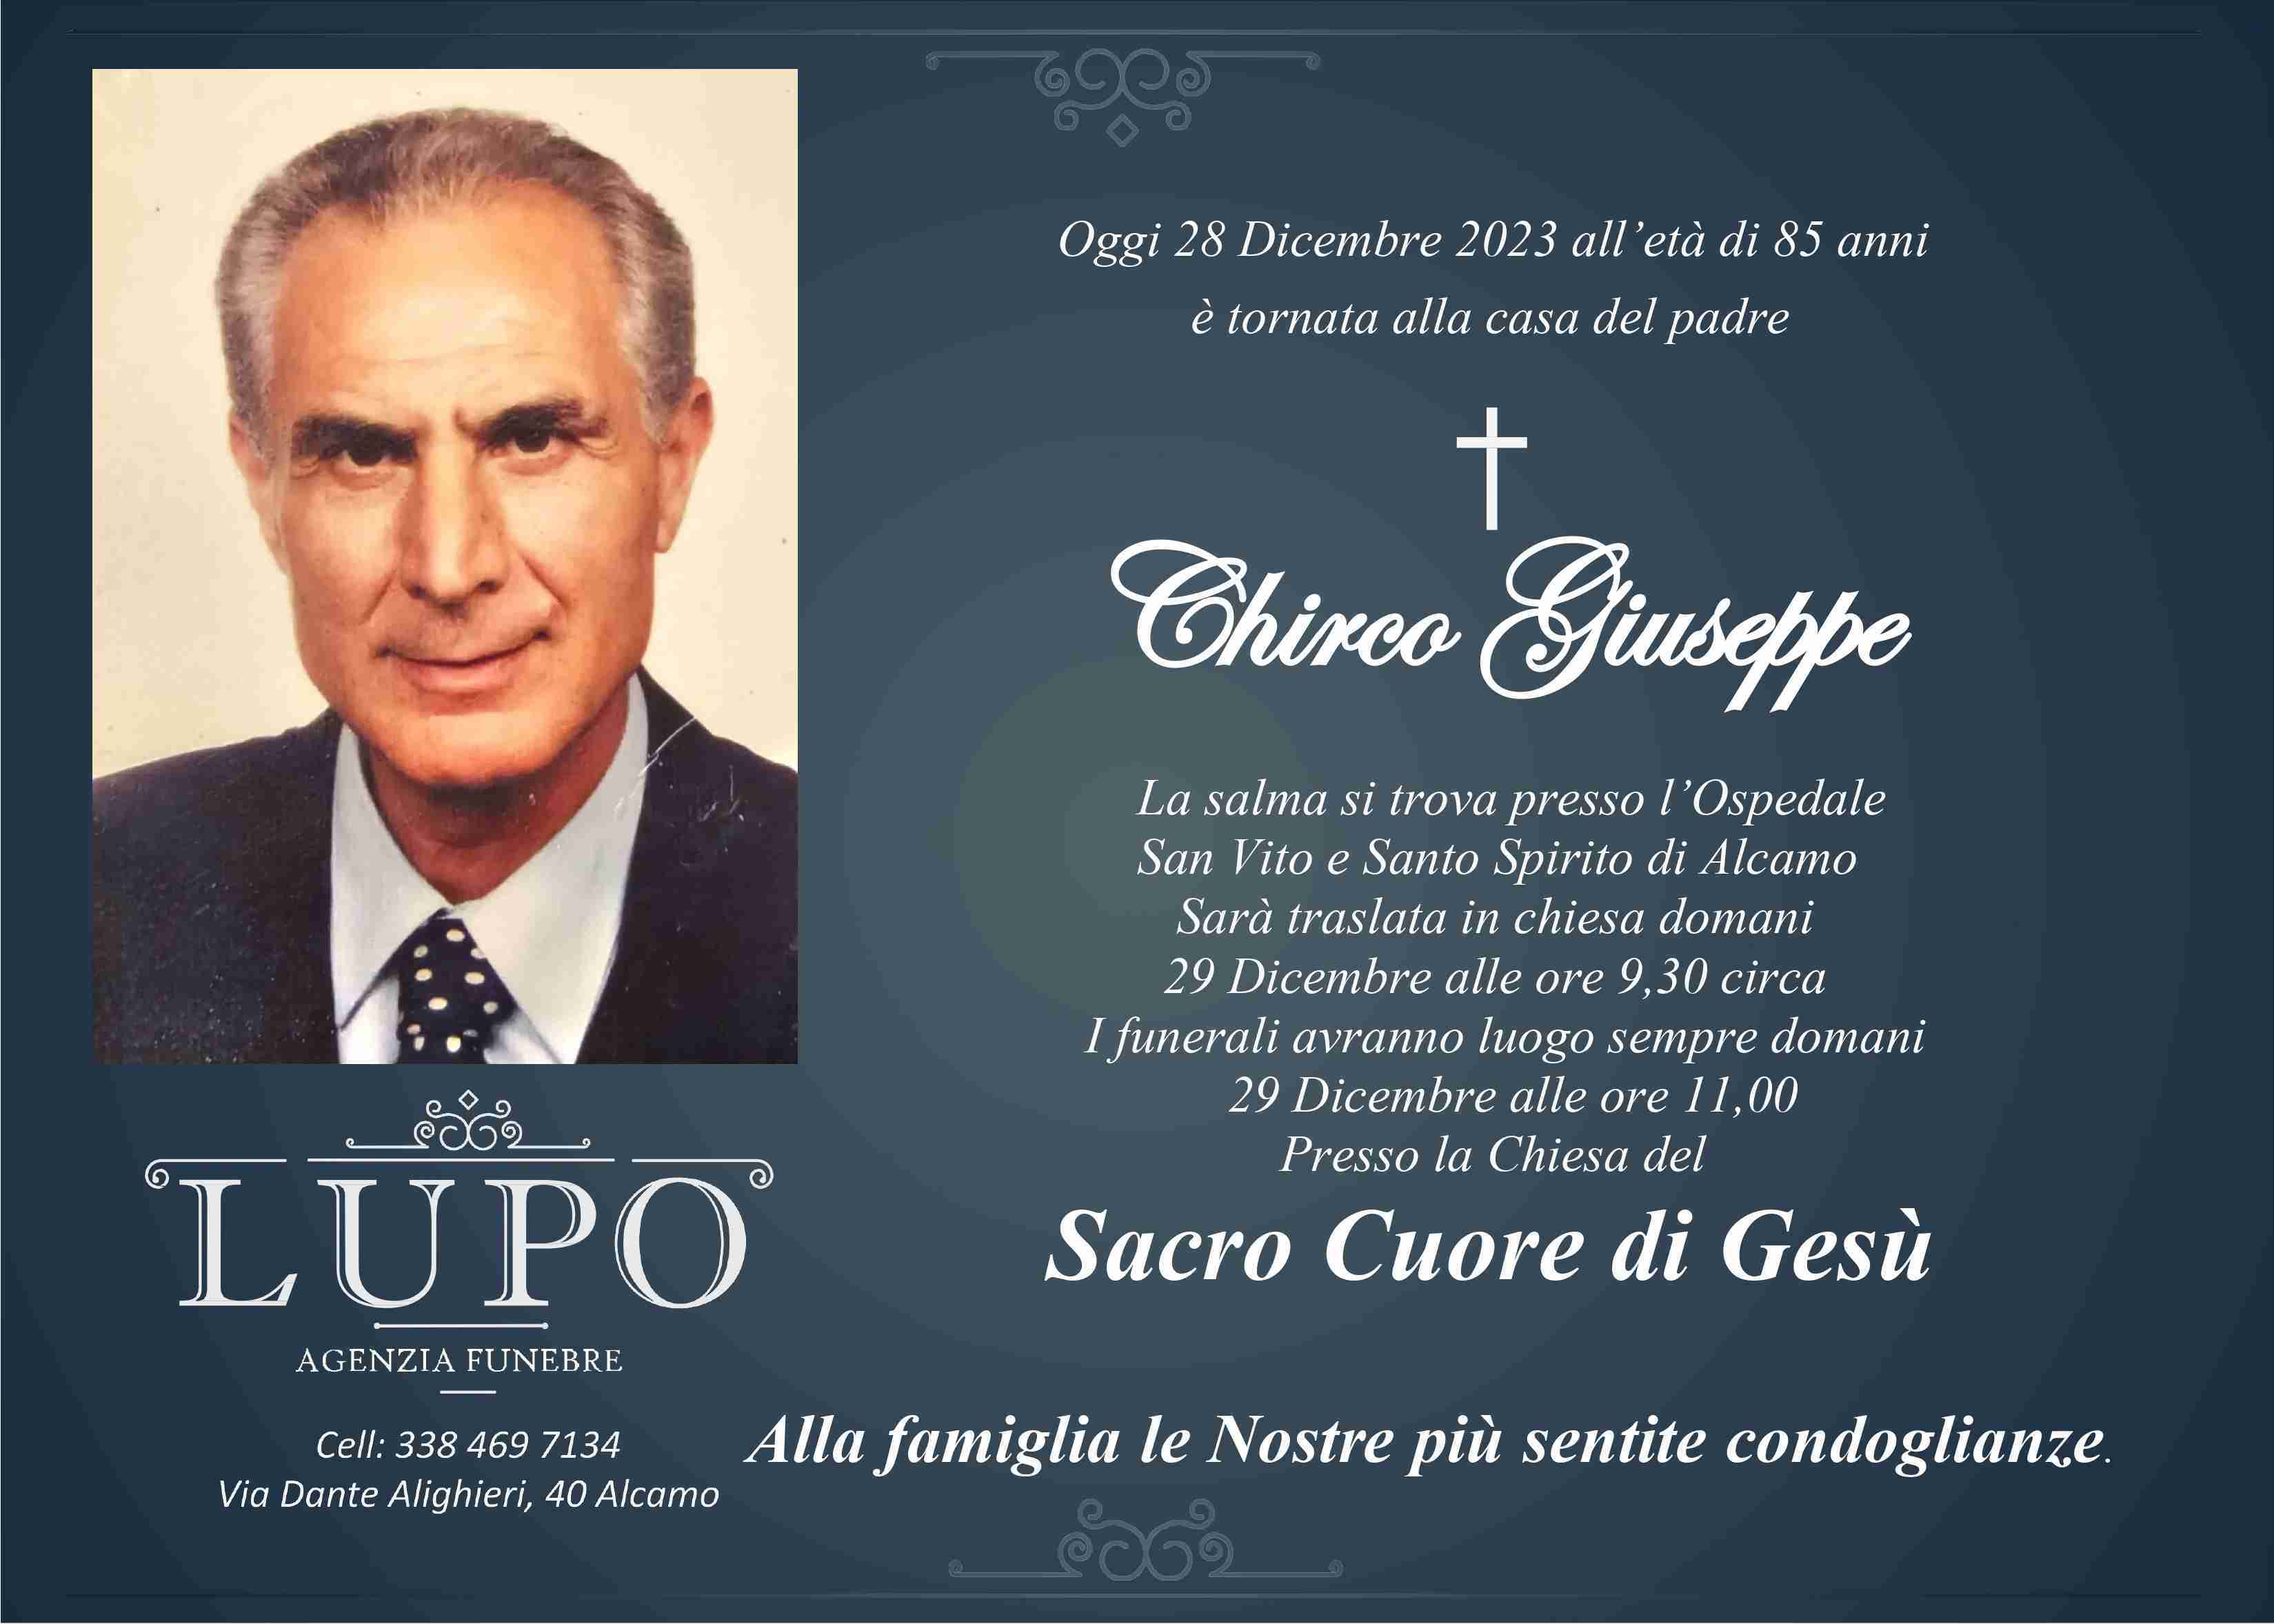 Giuseppe Chieco